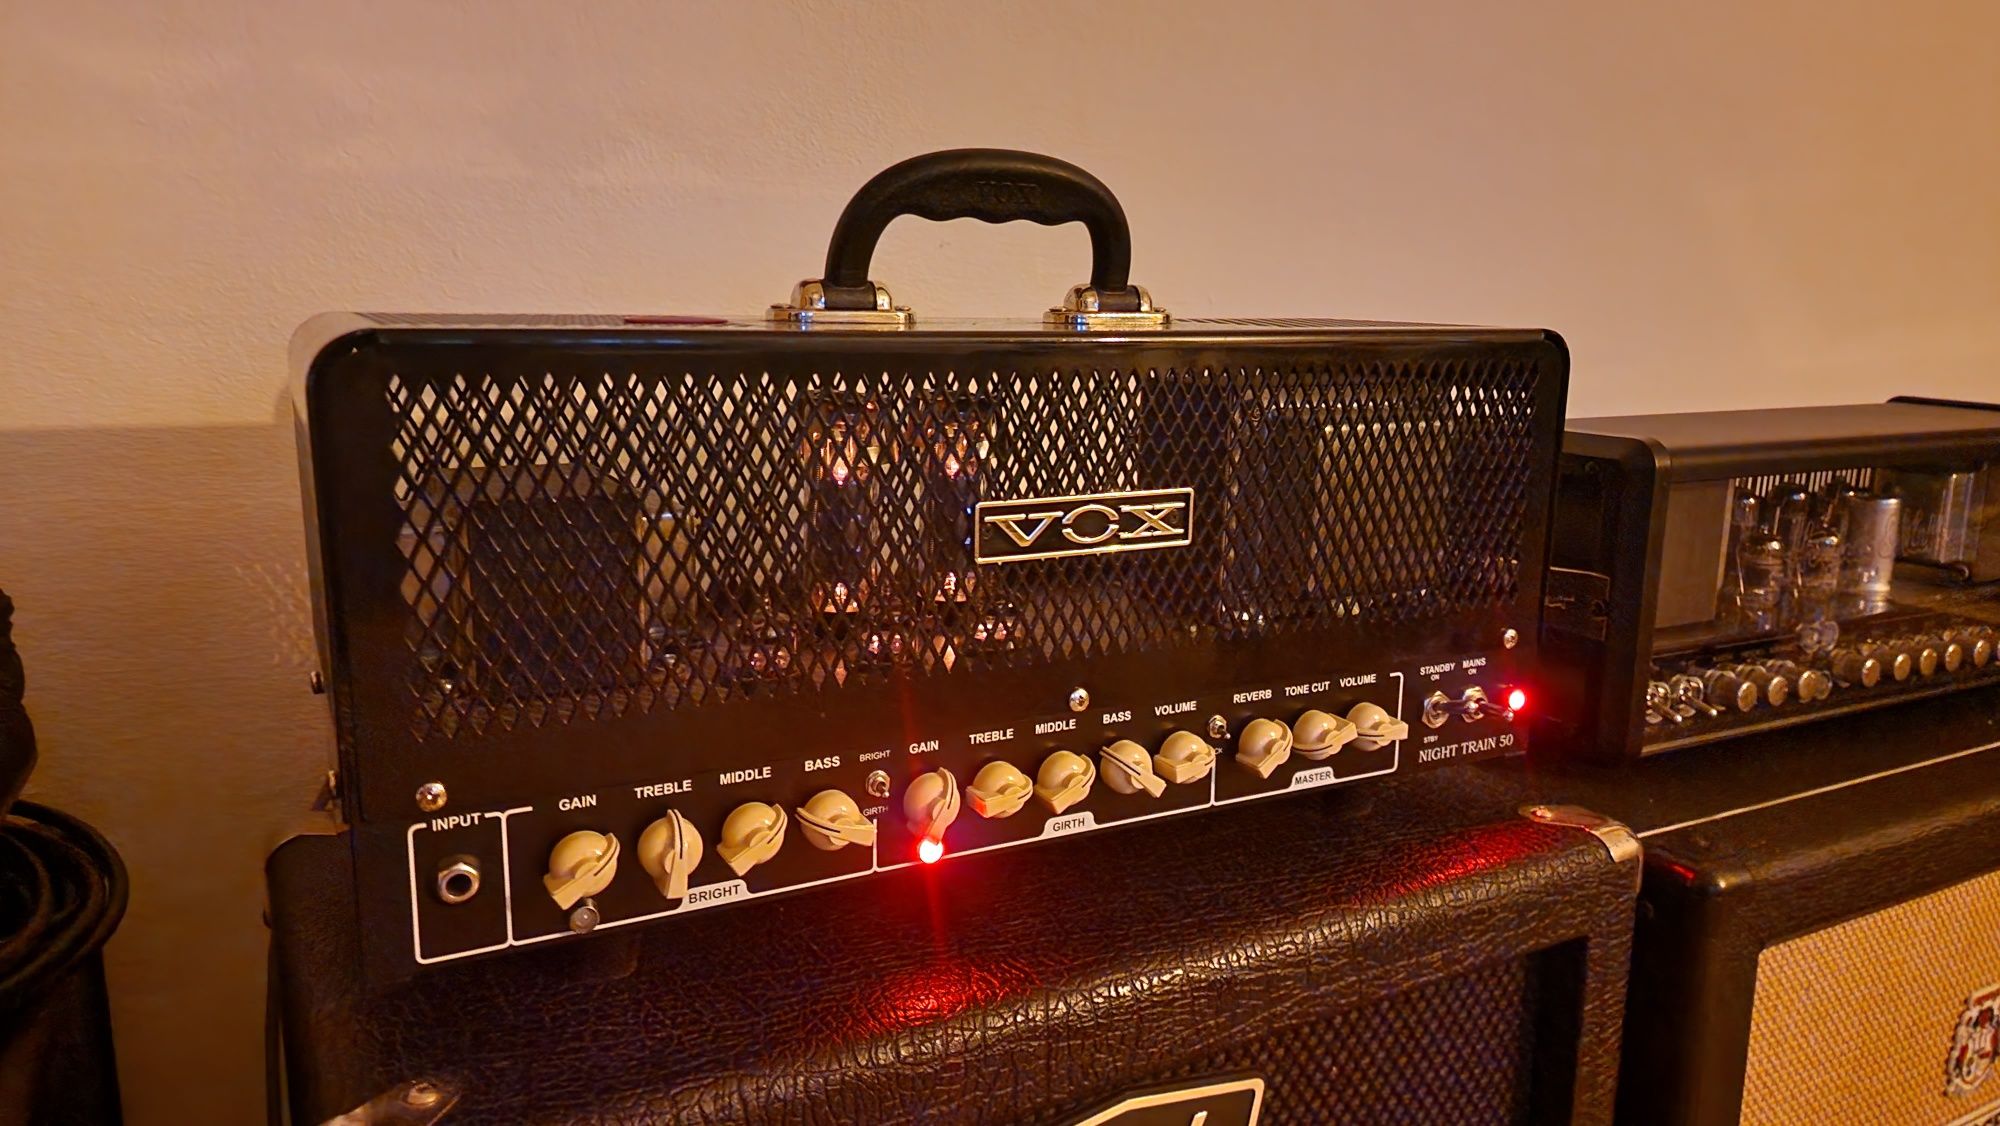 Vand amplificator Chitara Vox Night Train 50 (lampa)